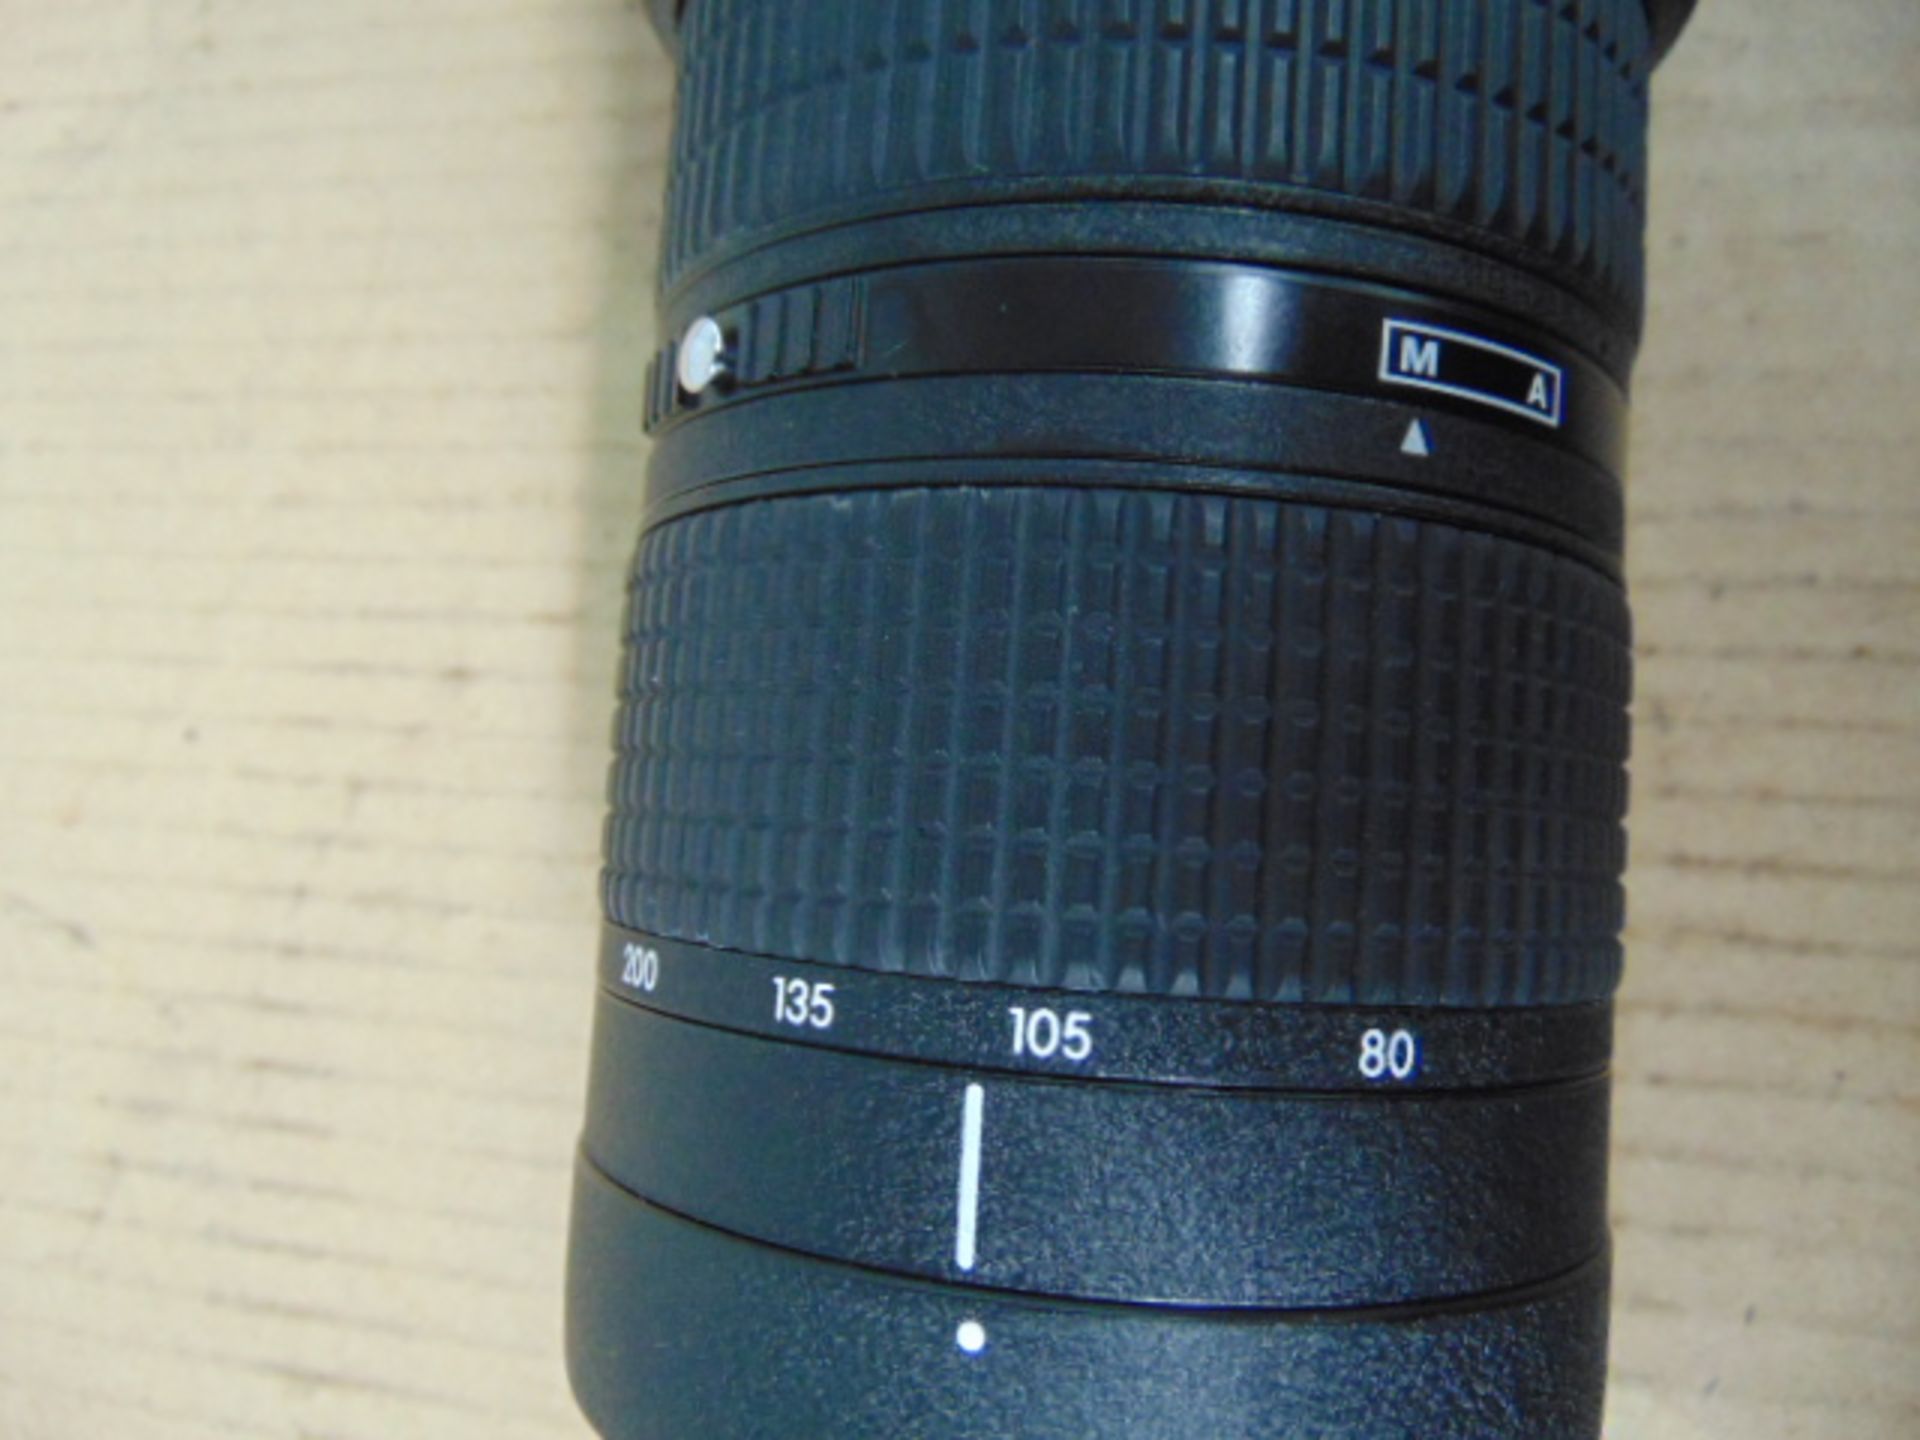 Nikon ED AF Nikkor 80-200mm 1:2.8 D Lense with Leather Carry Case - Image 5 of 11